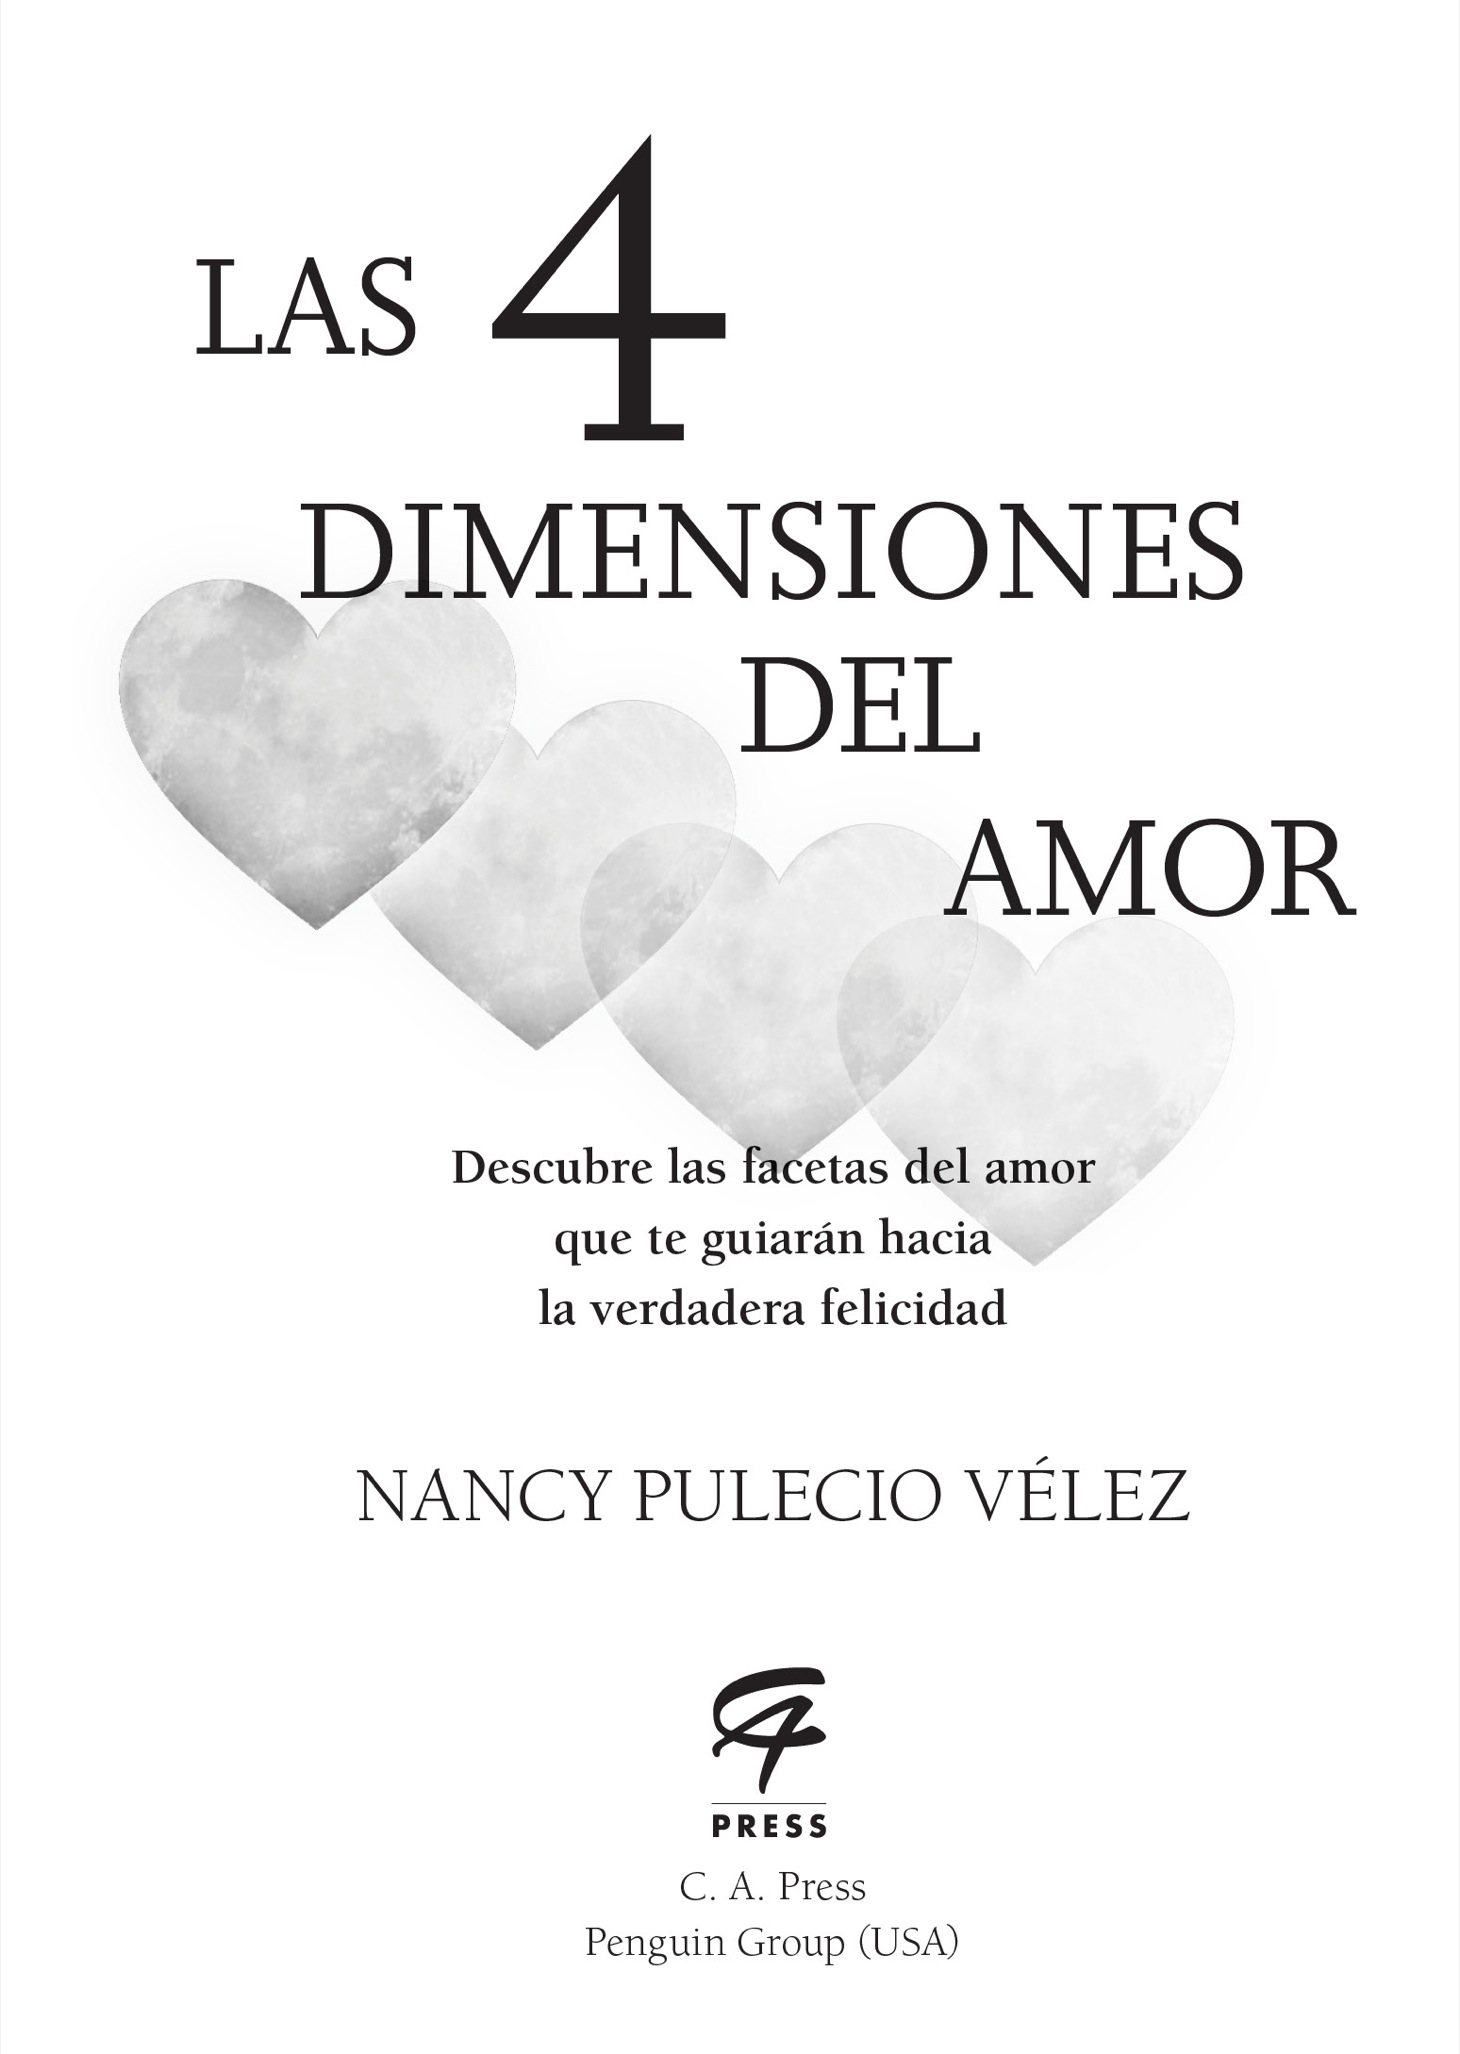 Las cuatro dimensiones del amor - image 2